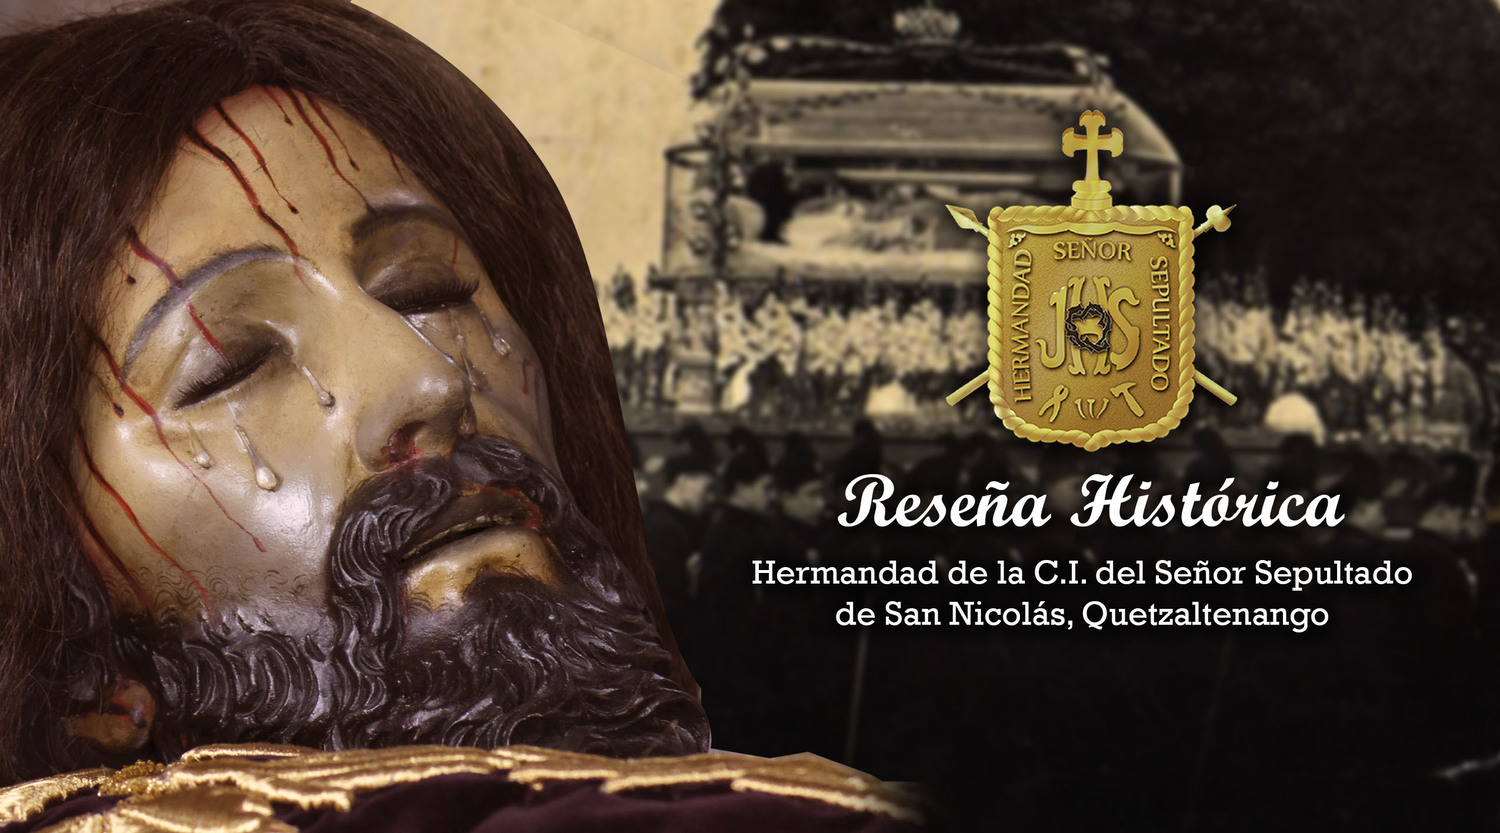 Hermandad del Señor Sepultado de San Nicolás Quetzaltenango: a los 100 años de fundación